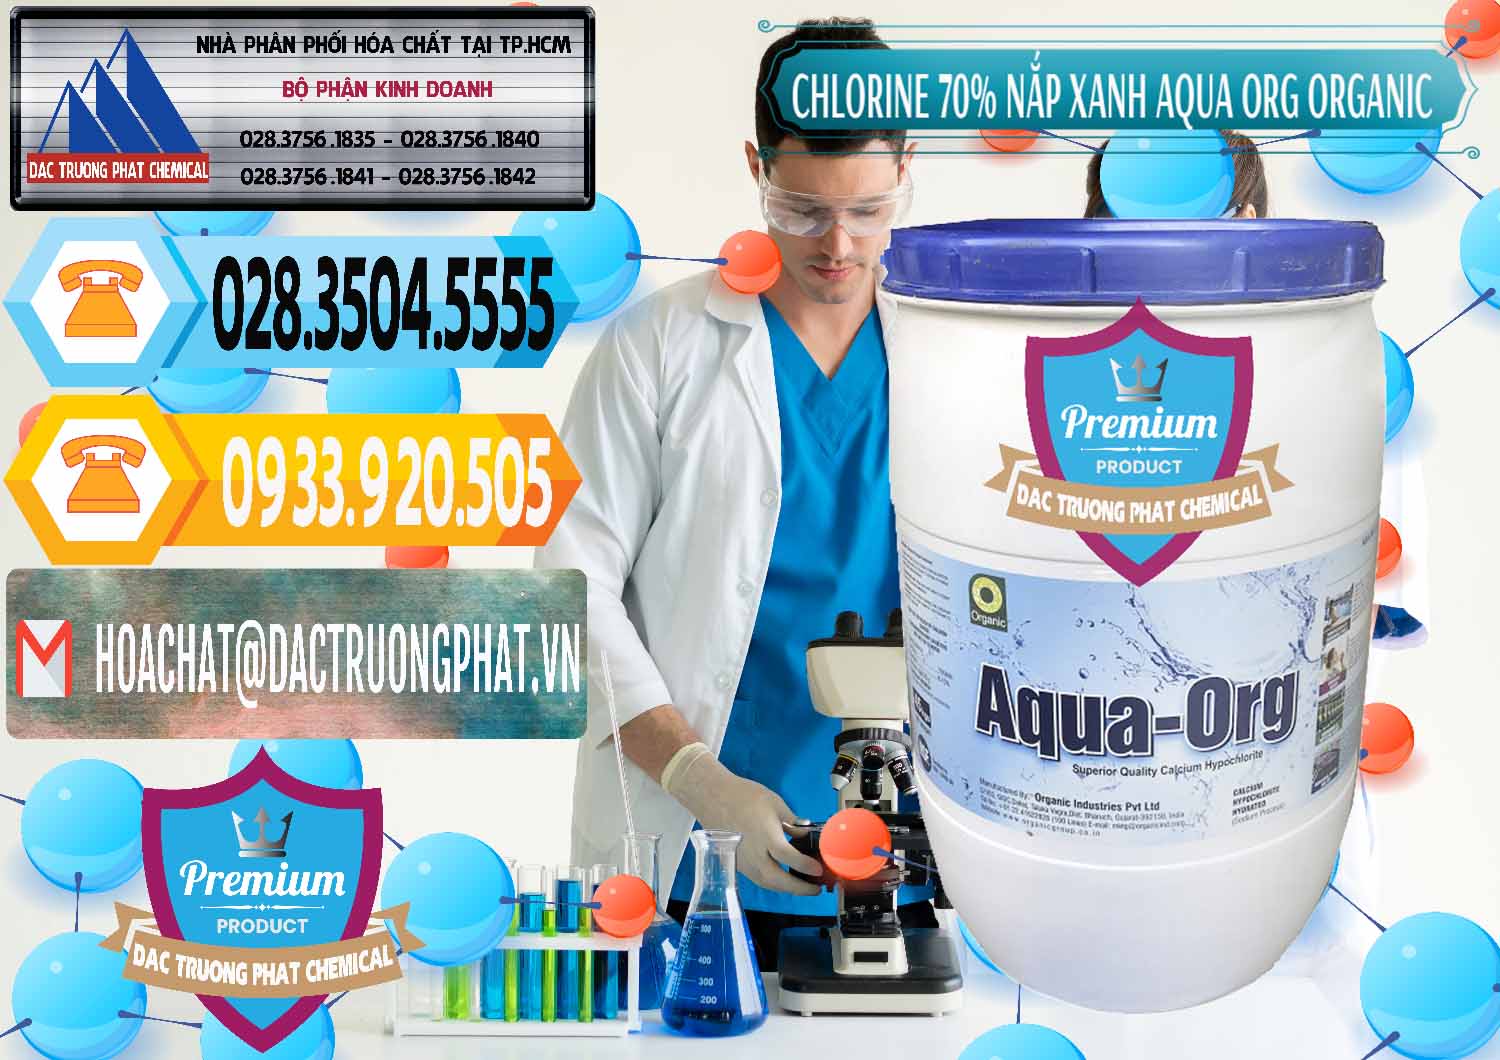 Chuyên kinh doanh & bán Chlorine – Clorin 70% Thùng Tròn Nắp Xanh Aqua ORG Organic Ấn Độ India - 0247 - Cty chuyên nhập khẩu và cung cấp hóa chất tại TP.HCM - hoachattayrua.net